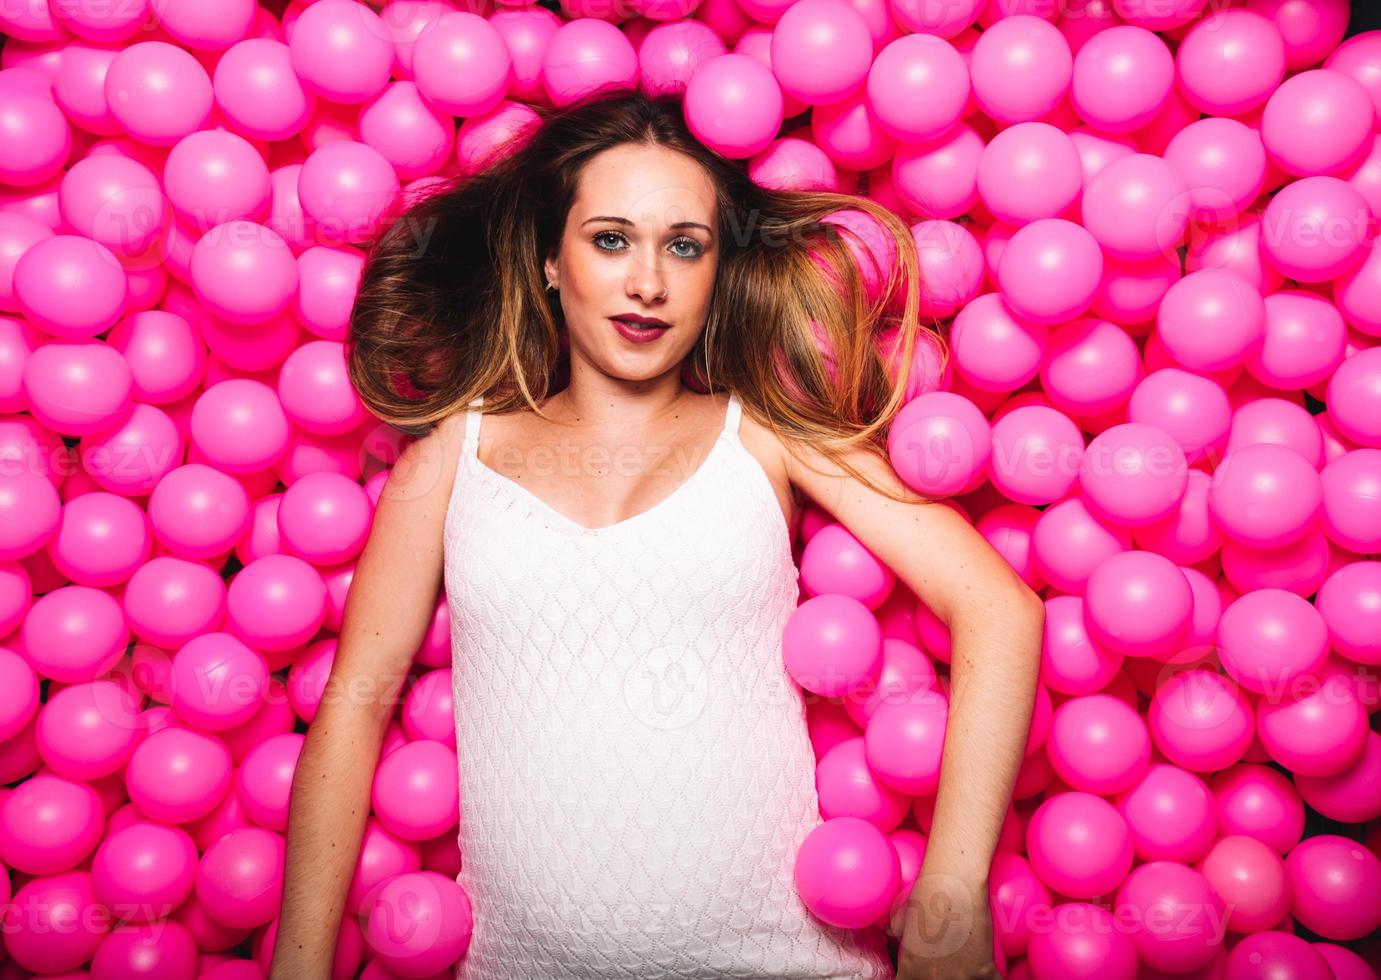 jonge zwangere vrouw die in een roze ballenbad speelt foto